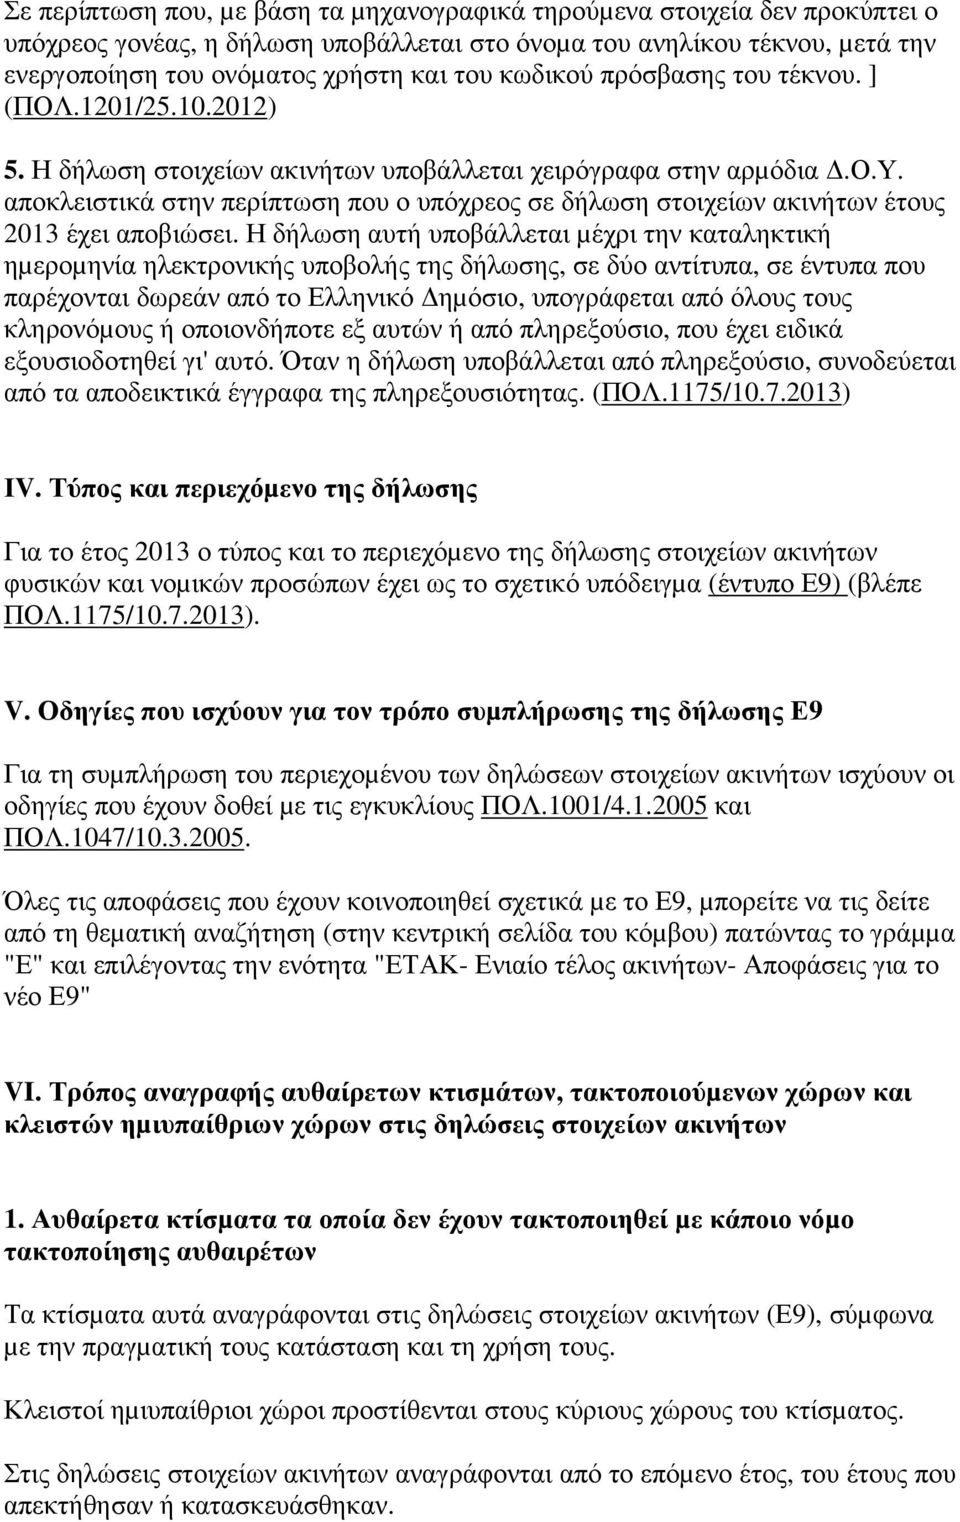 Η δήλωση αυτή υποβάλλεται µέχρι την καταληκτική ηµεροµηνία ηλεκτρονικής υποβολής της δήλωσης, σε δύο αντίτυπα, σε έντυπα που παρέχονται δωρεάν από το Ελληνικό ηµόσιο, υπογράφεται από όλους τους